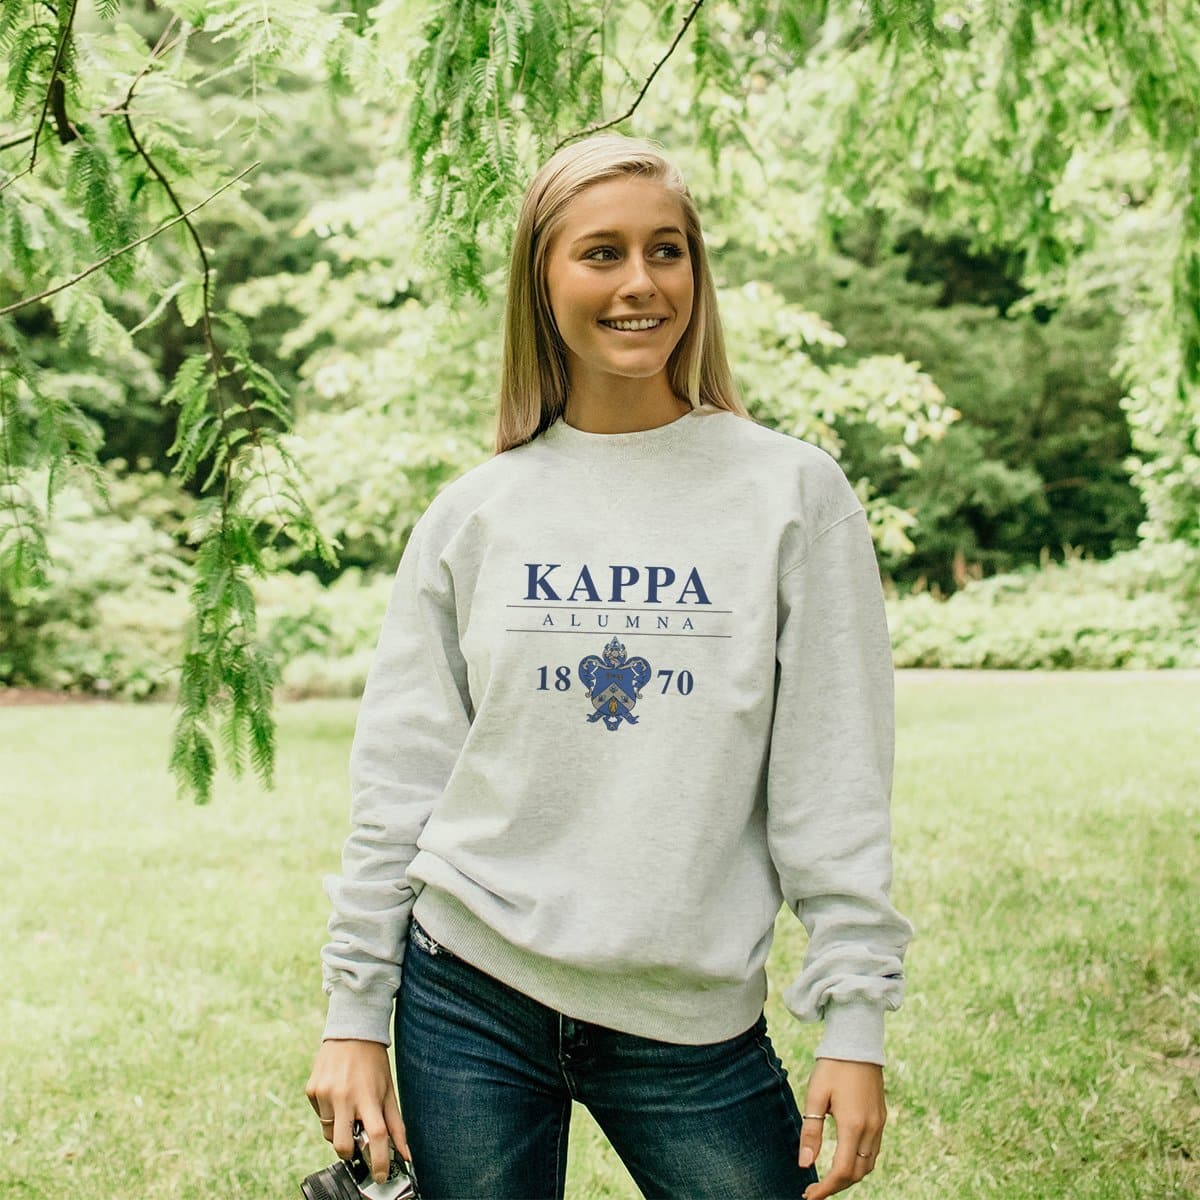 Kappa Alumni Champion Sweatshirt | Kappa Kappa Gamma | Sweatshirts > Crewneck sweatshirts